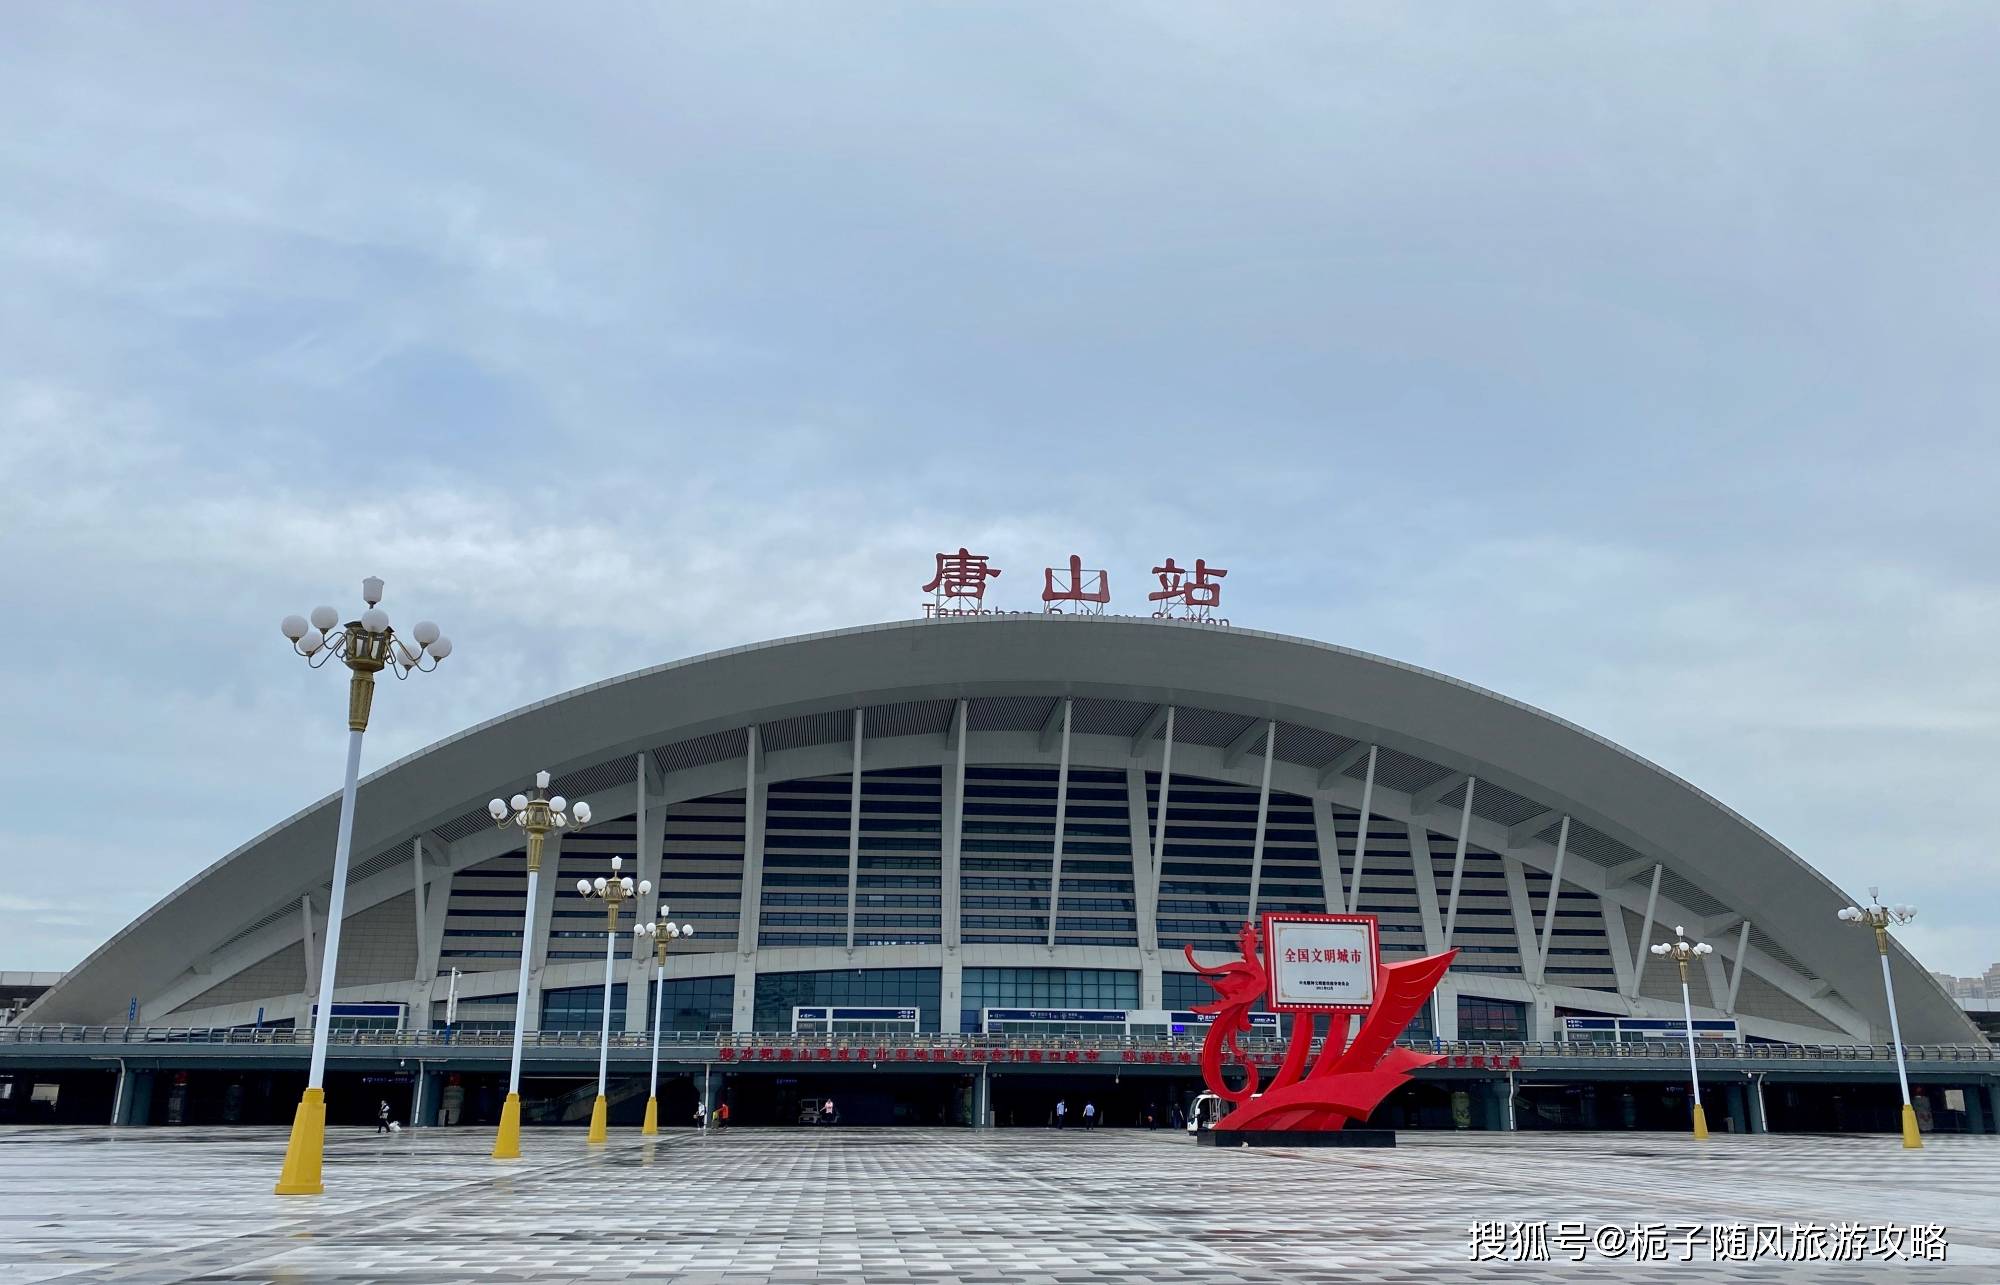 京唐城际铁路沿线的8座车站一览